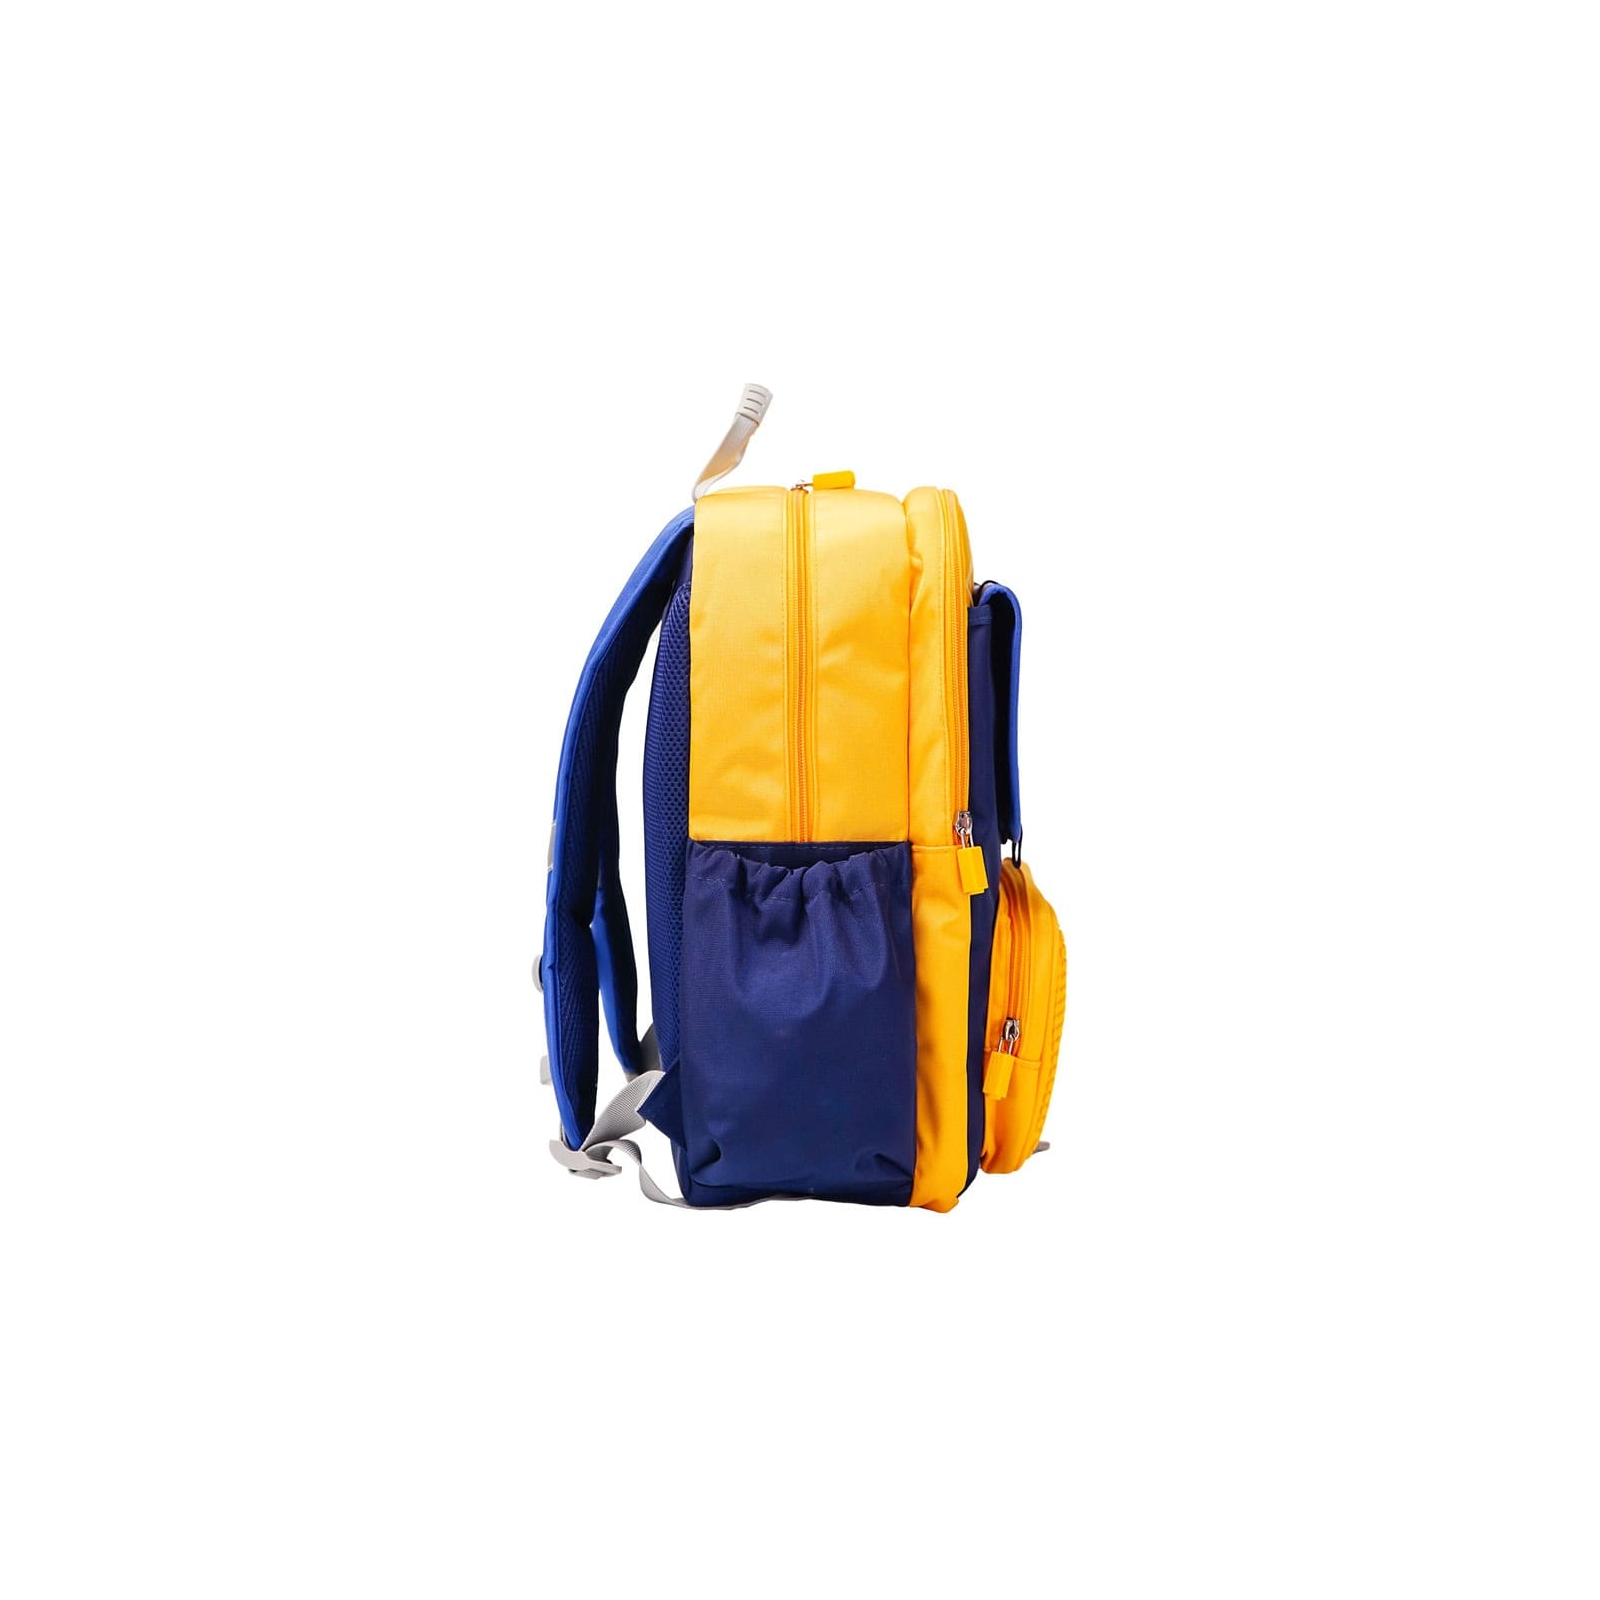 Рюкзак школьный Upixel Dreamer Space School Bag - Сине-желтый (U23-X01-B) изображение 5